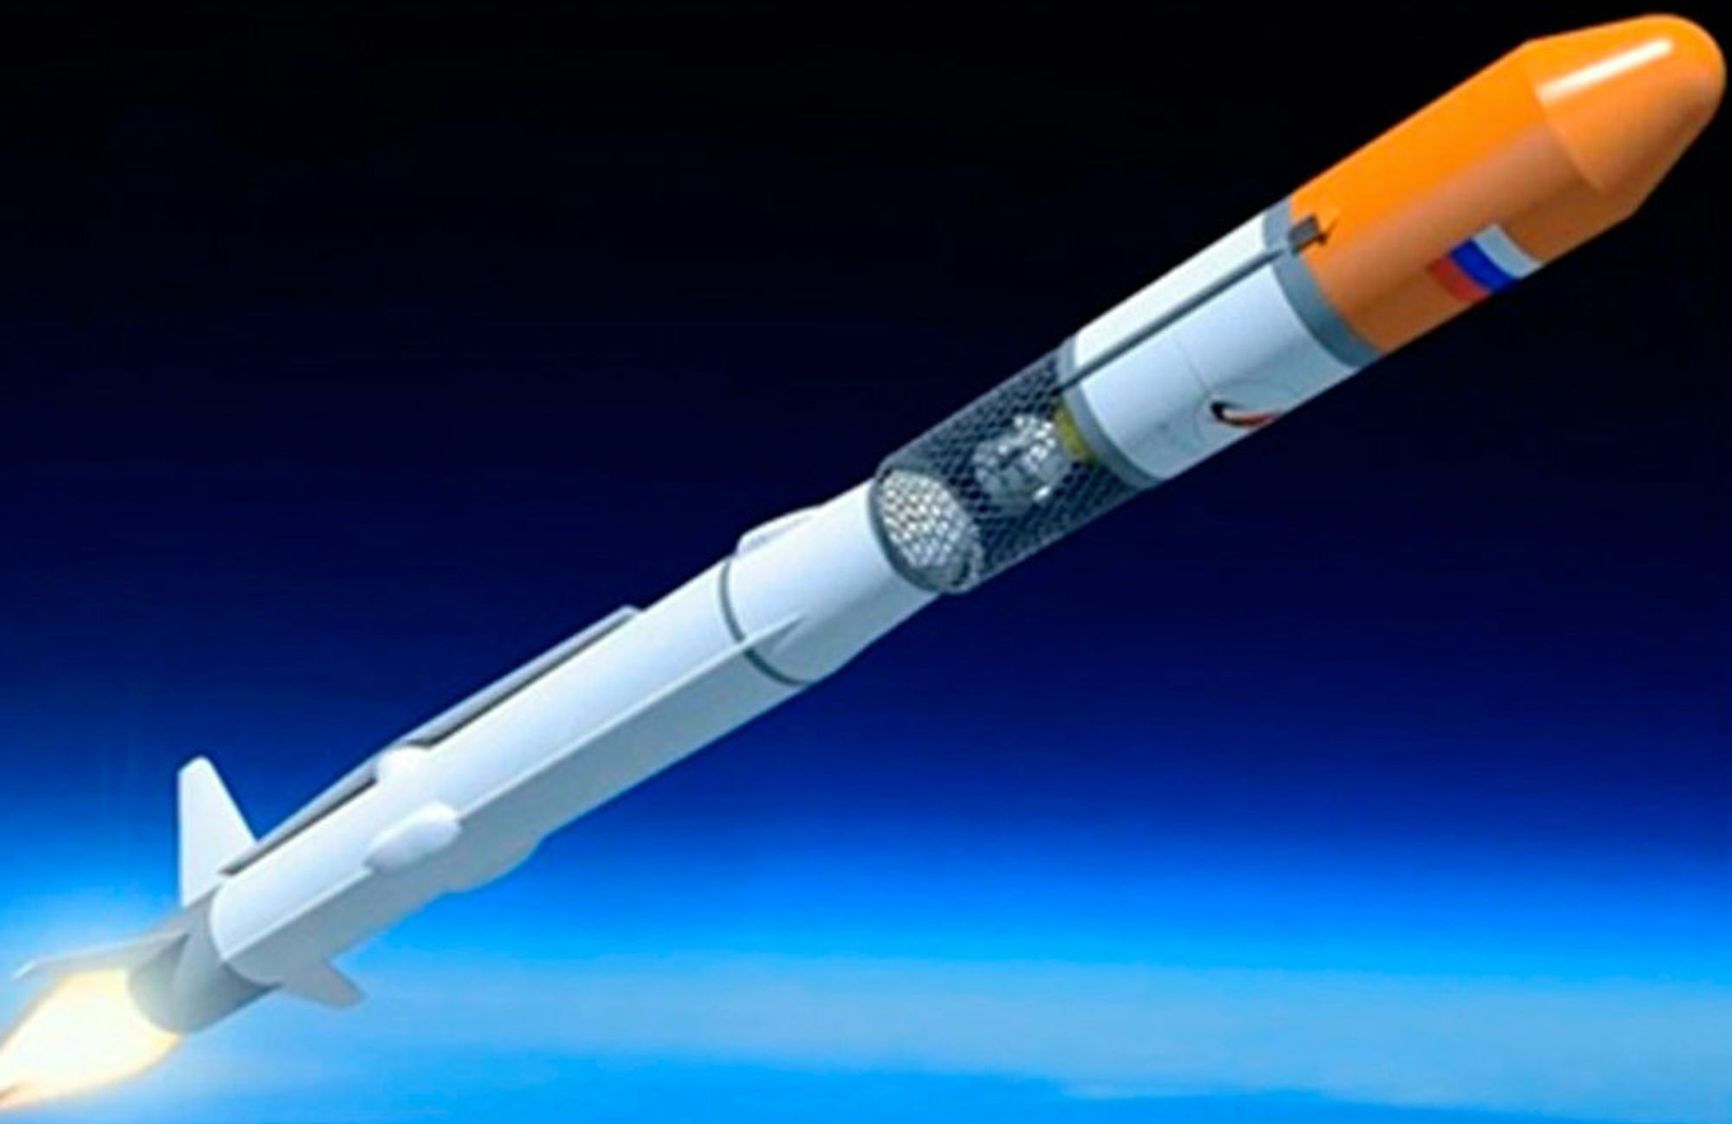 Amur-NLG Rocket Project